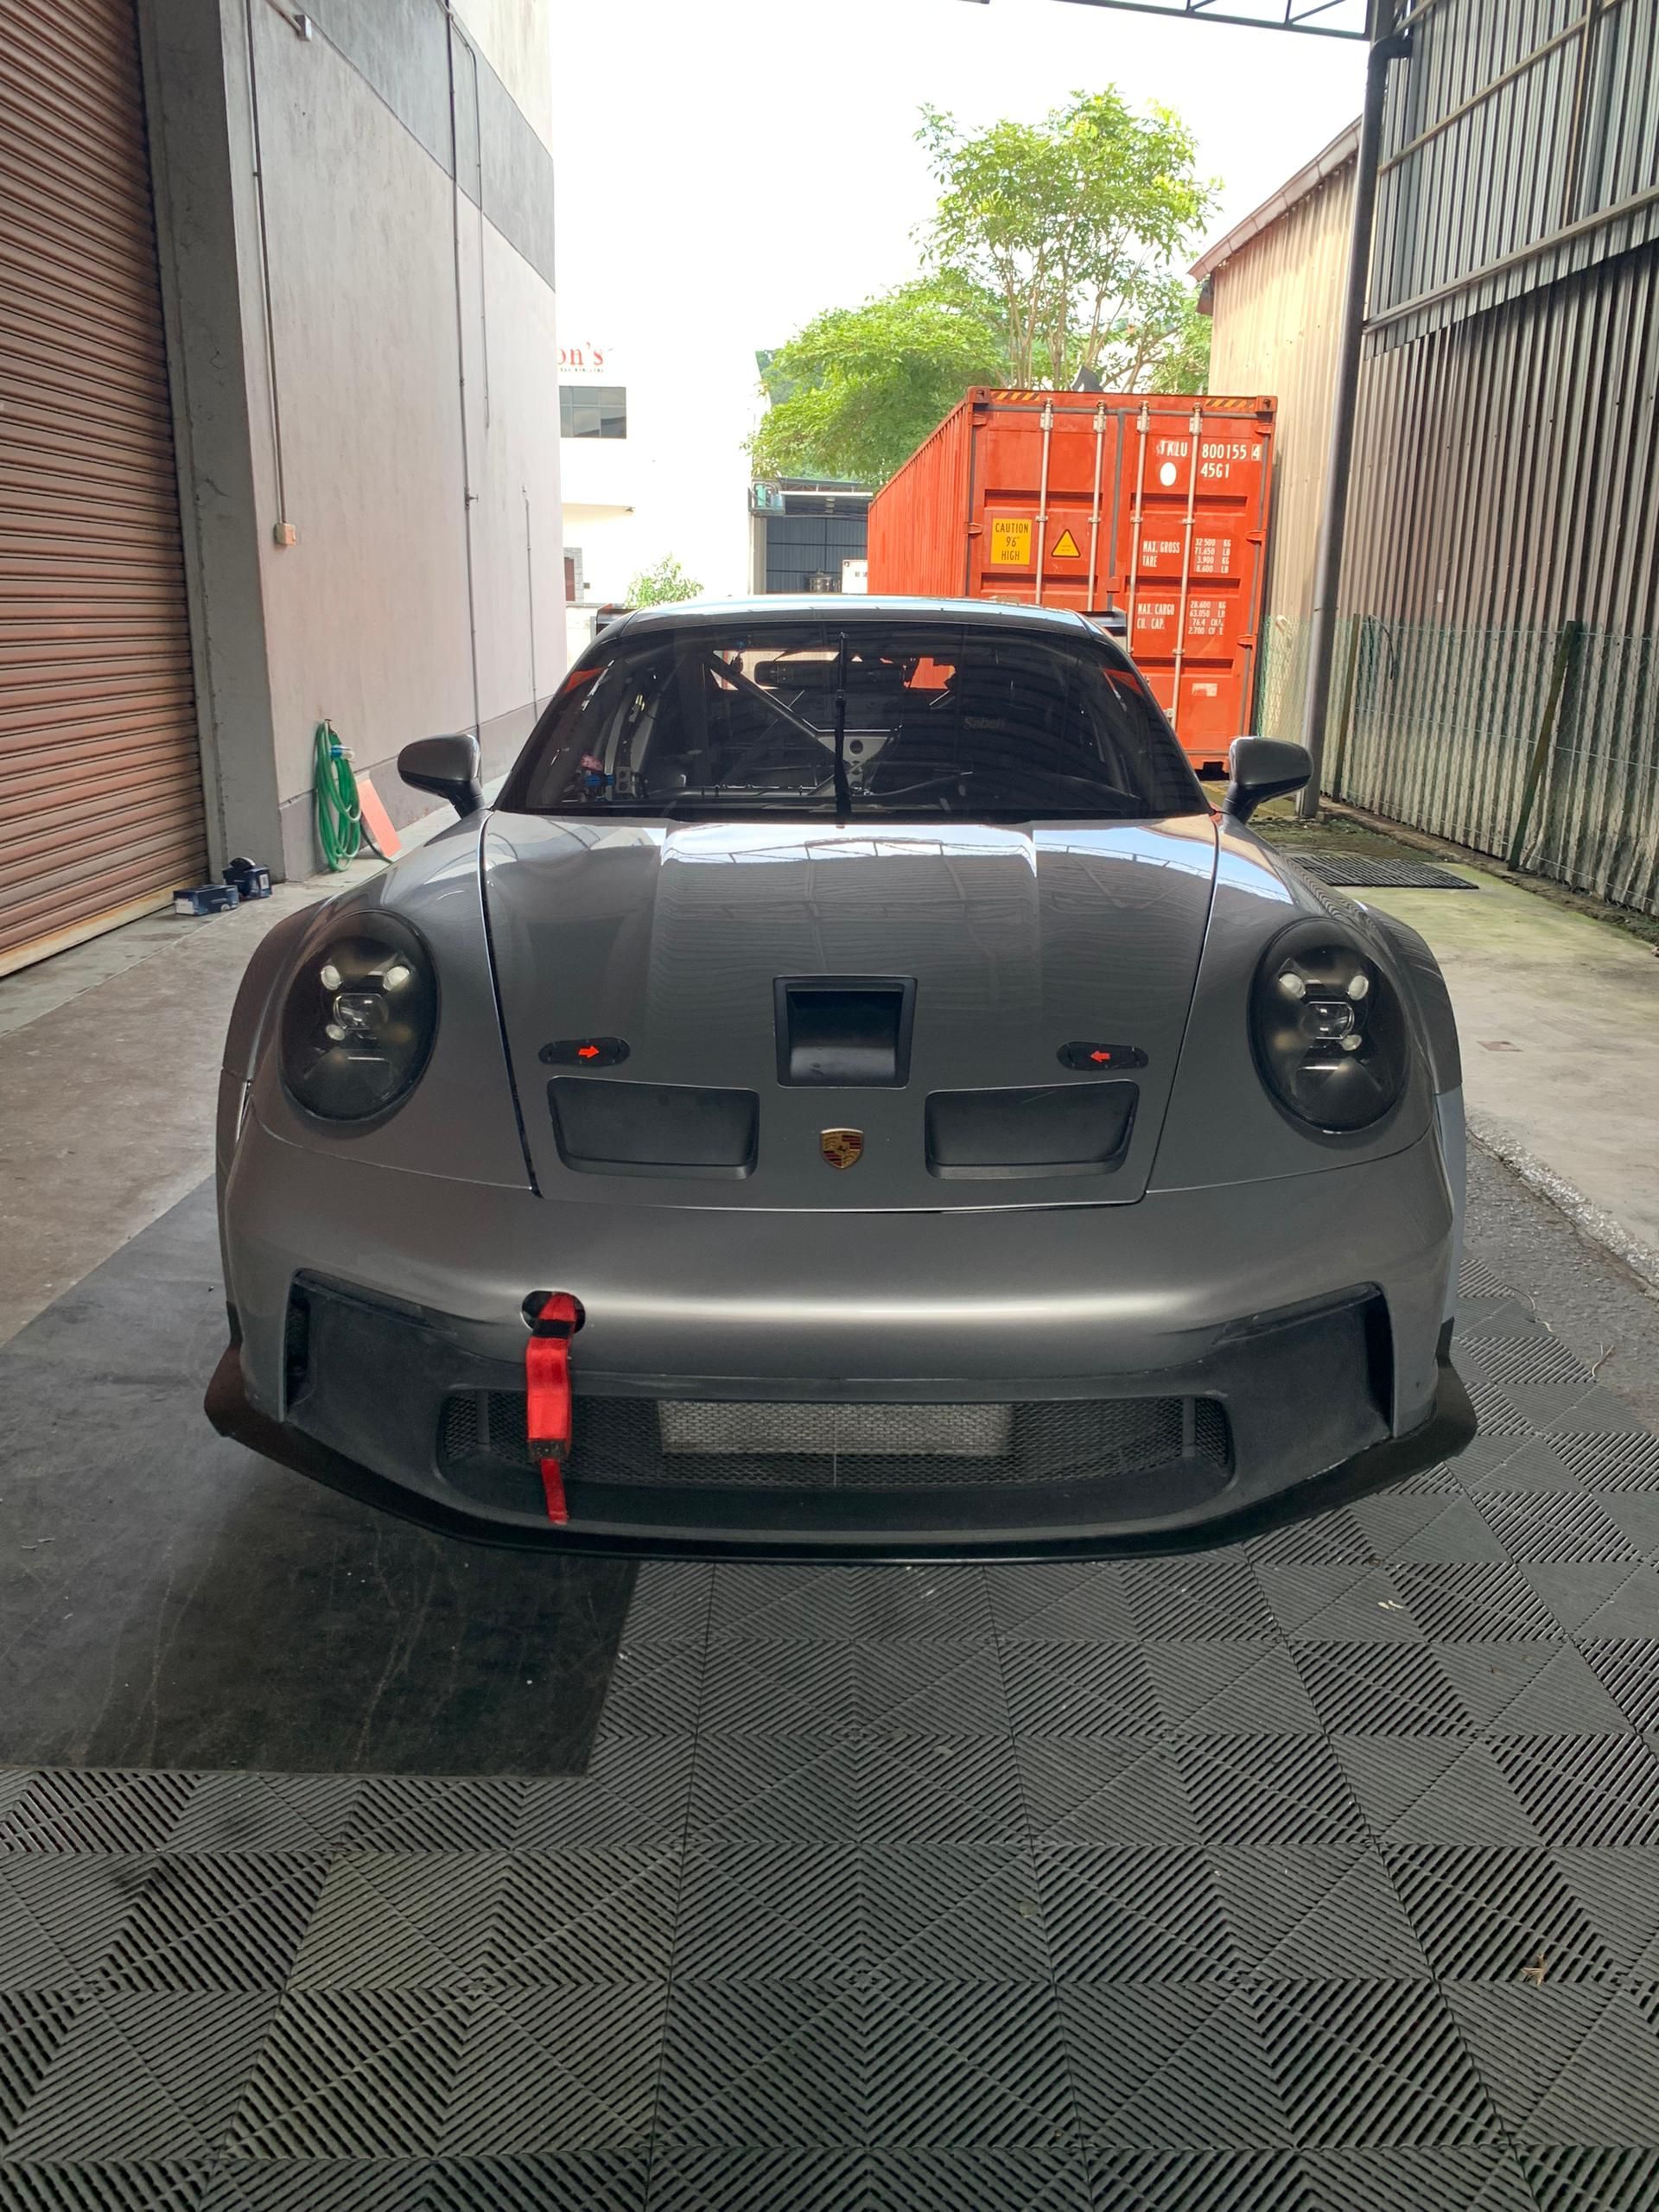 Copa Porsche 911 GT3 2021 (992) - 56,9 horas